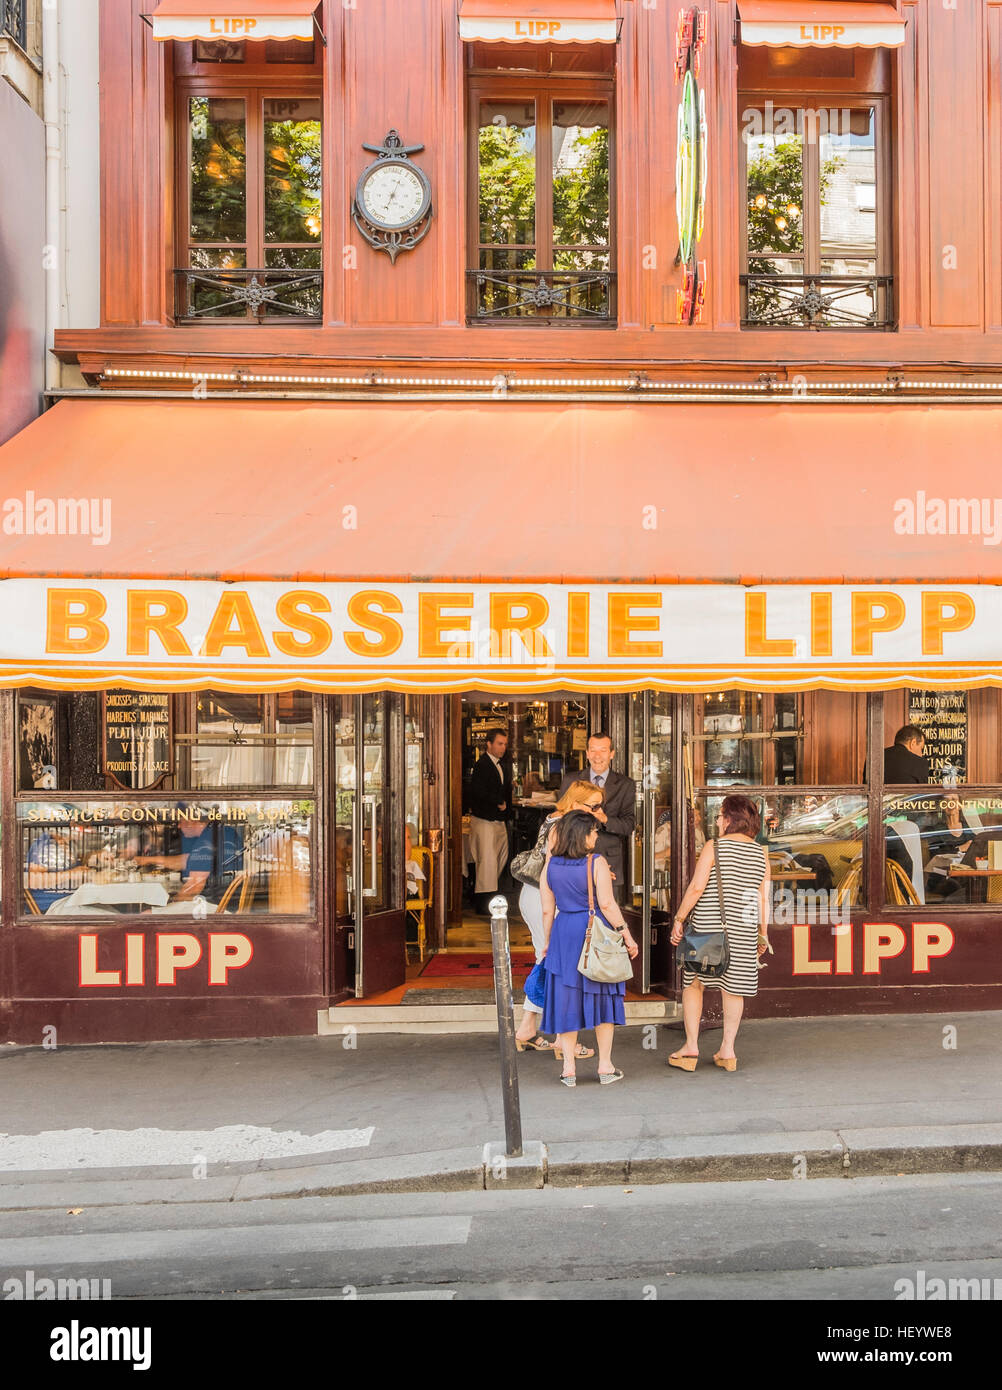 street scene in front of brasserie lipp Stock Photo